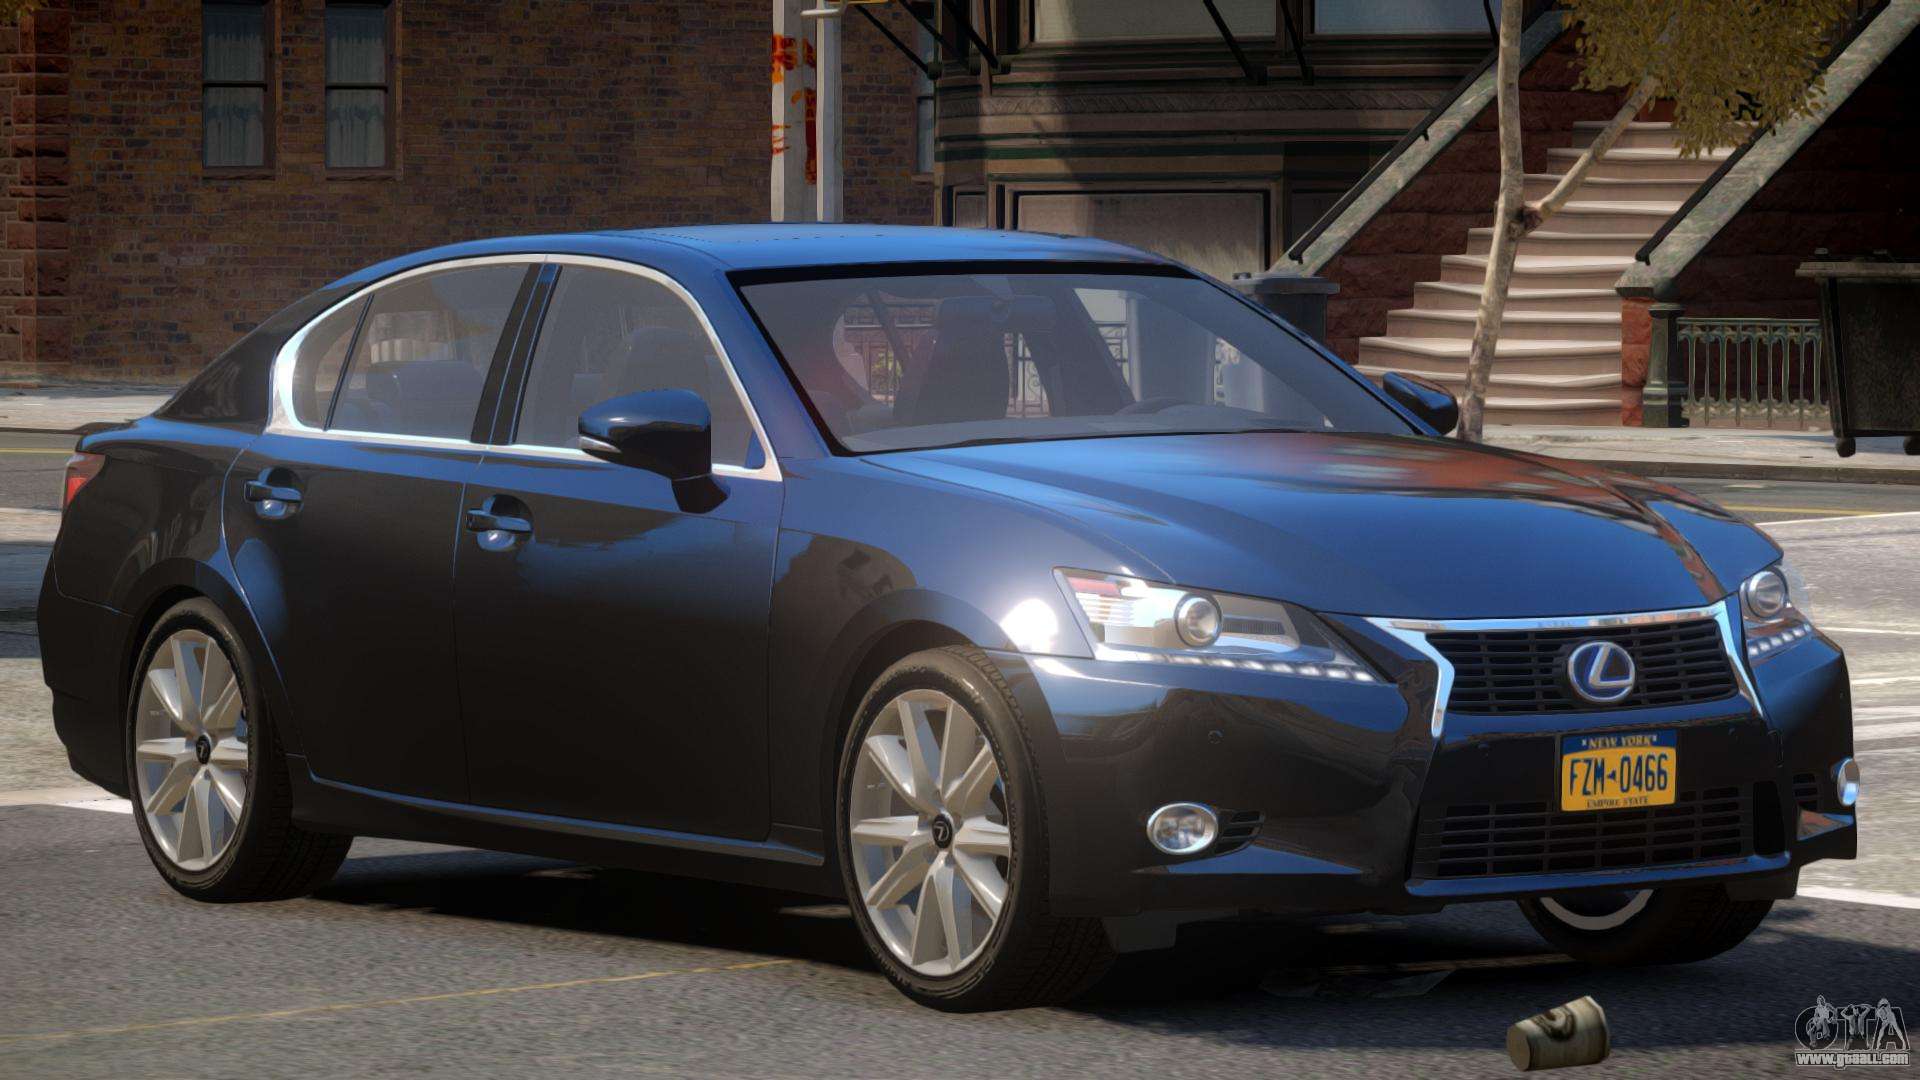 Lexus GS V1.1 for GTA 4